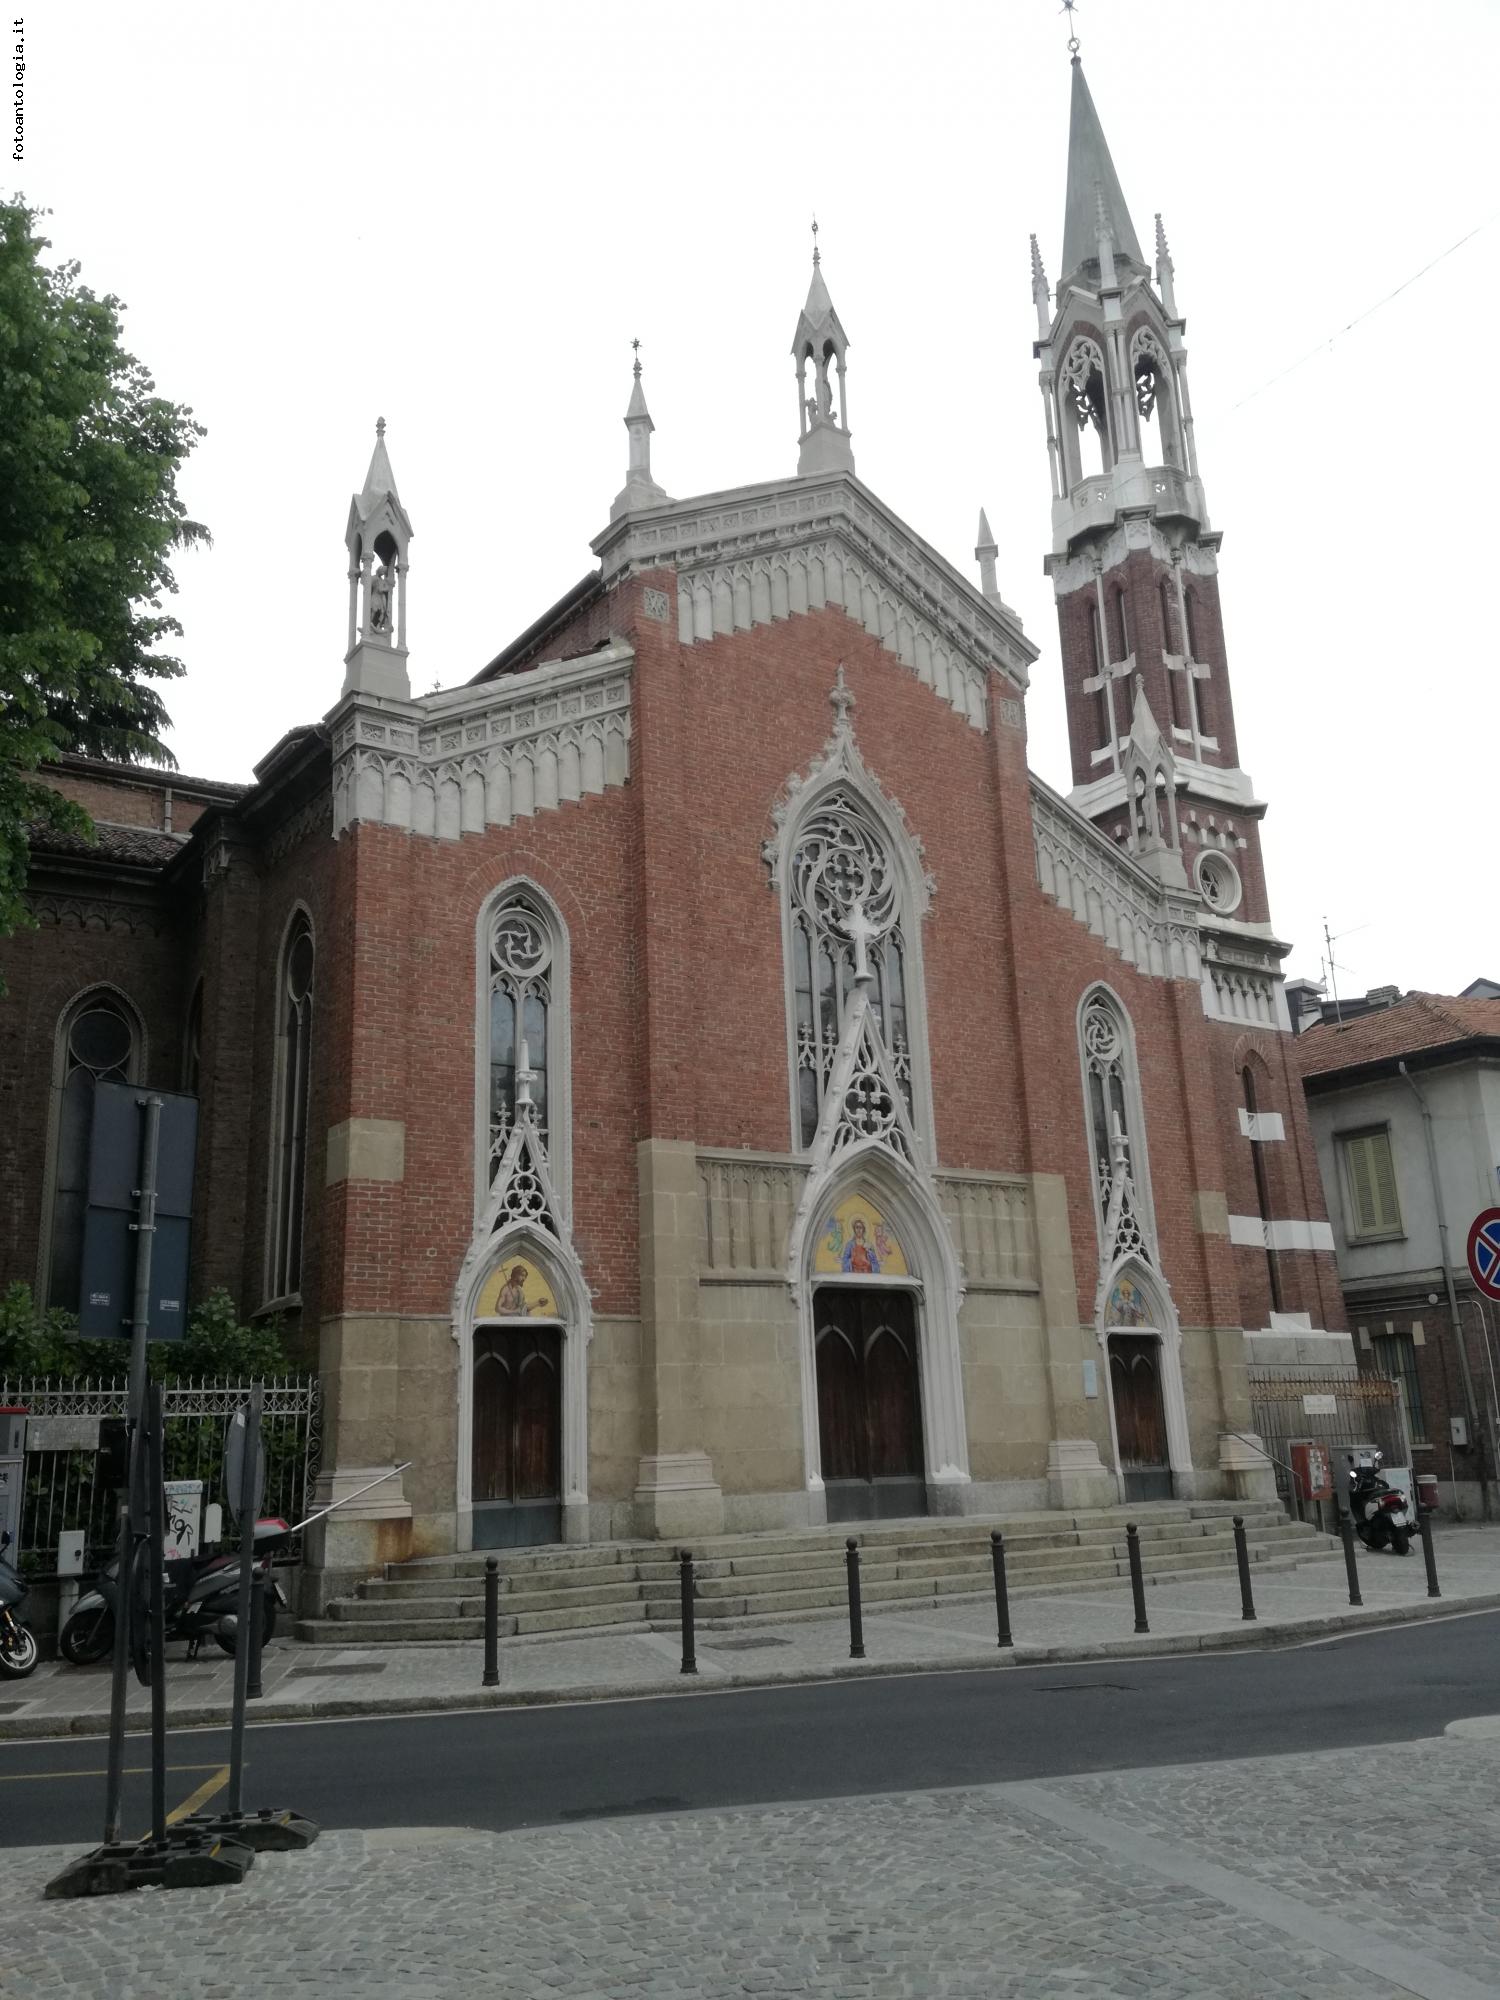 Monza - CHiesa Santa Maria degli Angeli